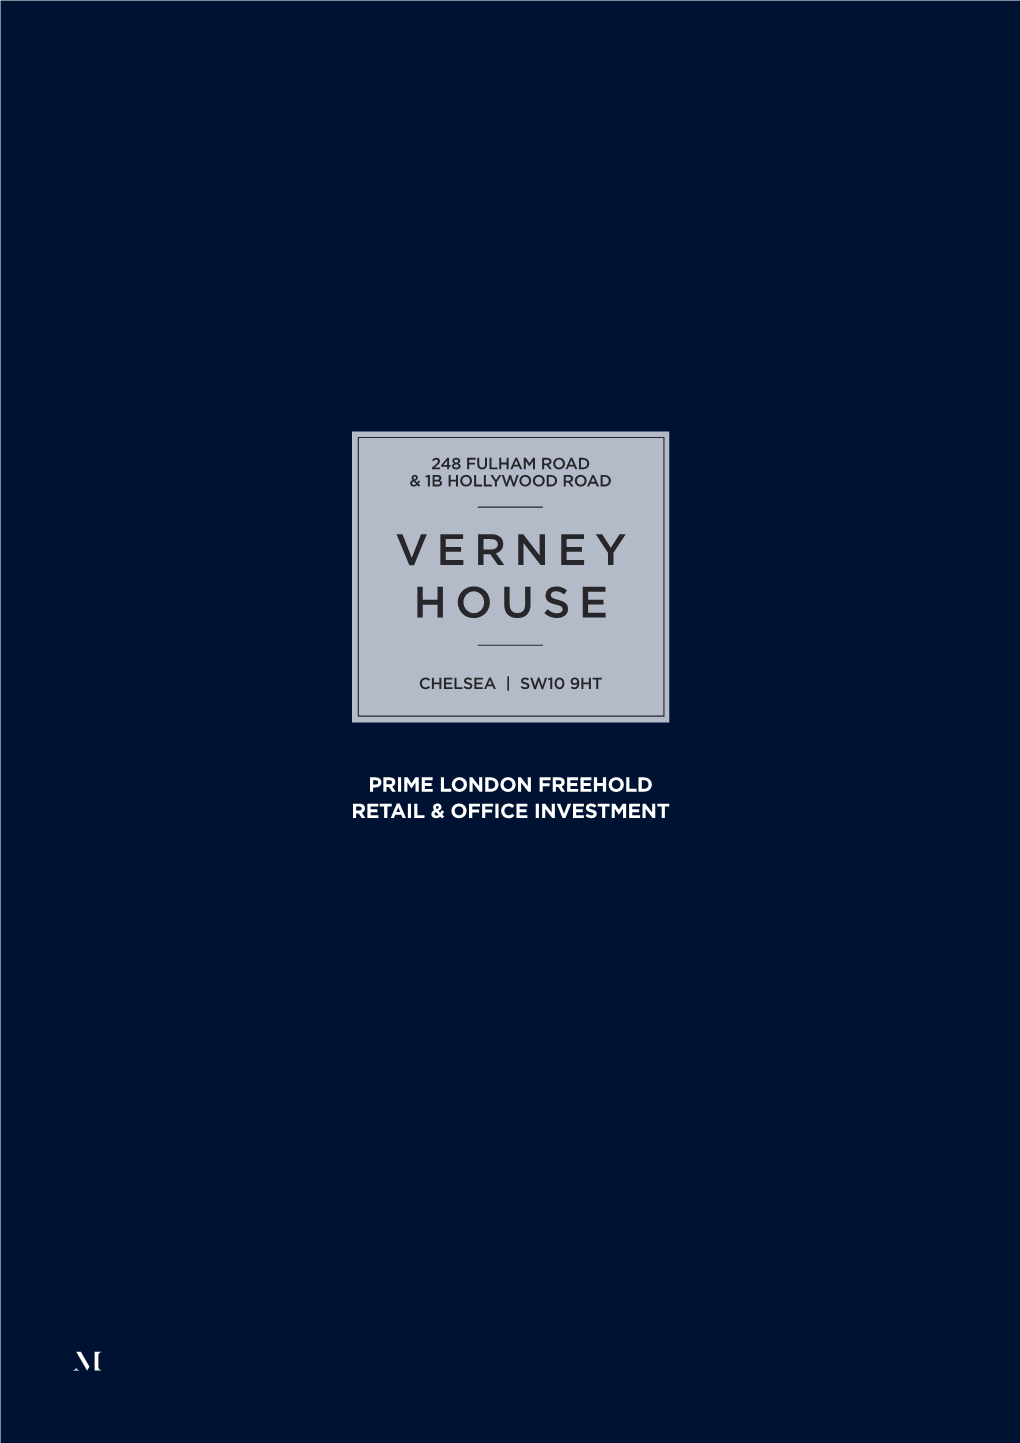 Verney House Investment Brochure V12.Indd